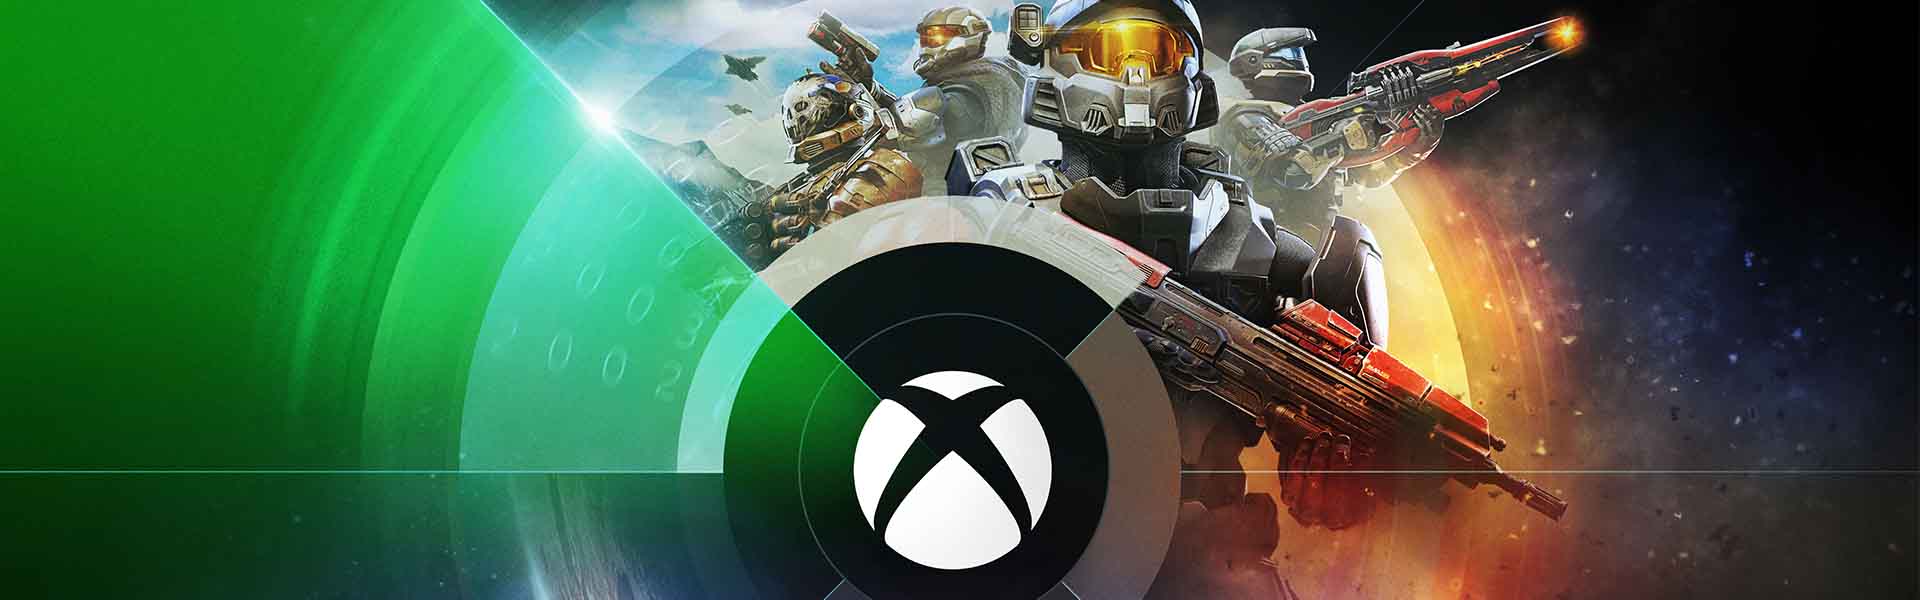 Xbox Showcase Banner